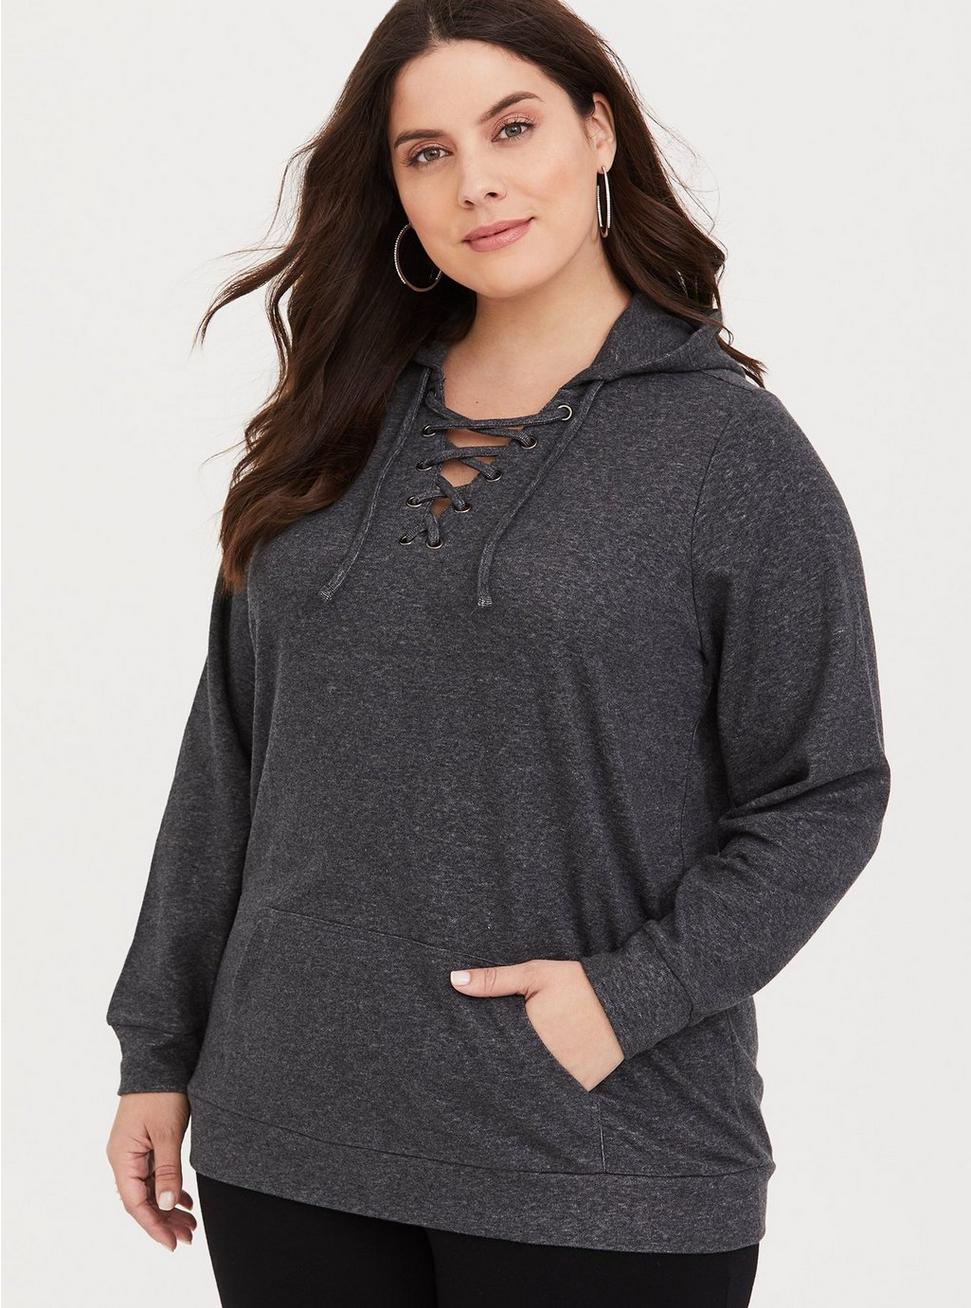 Plus Size - Grey Crisscross Hooded Sweater - Torrid